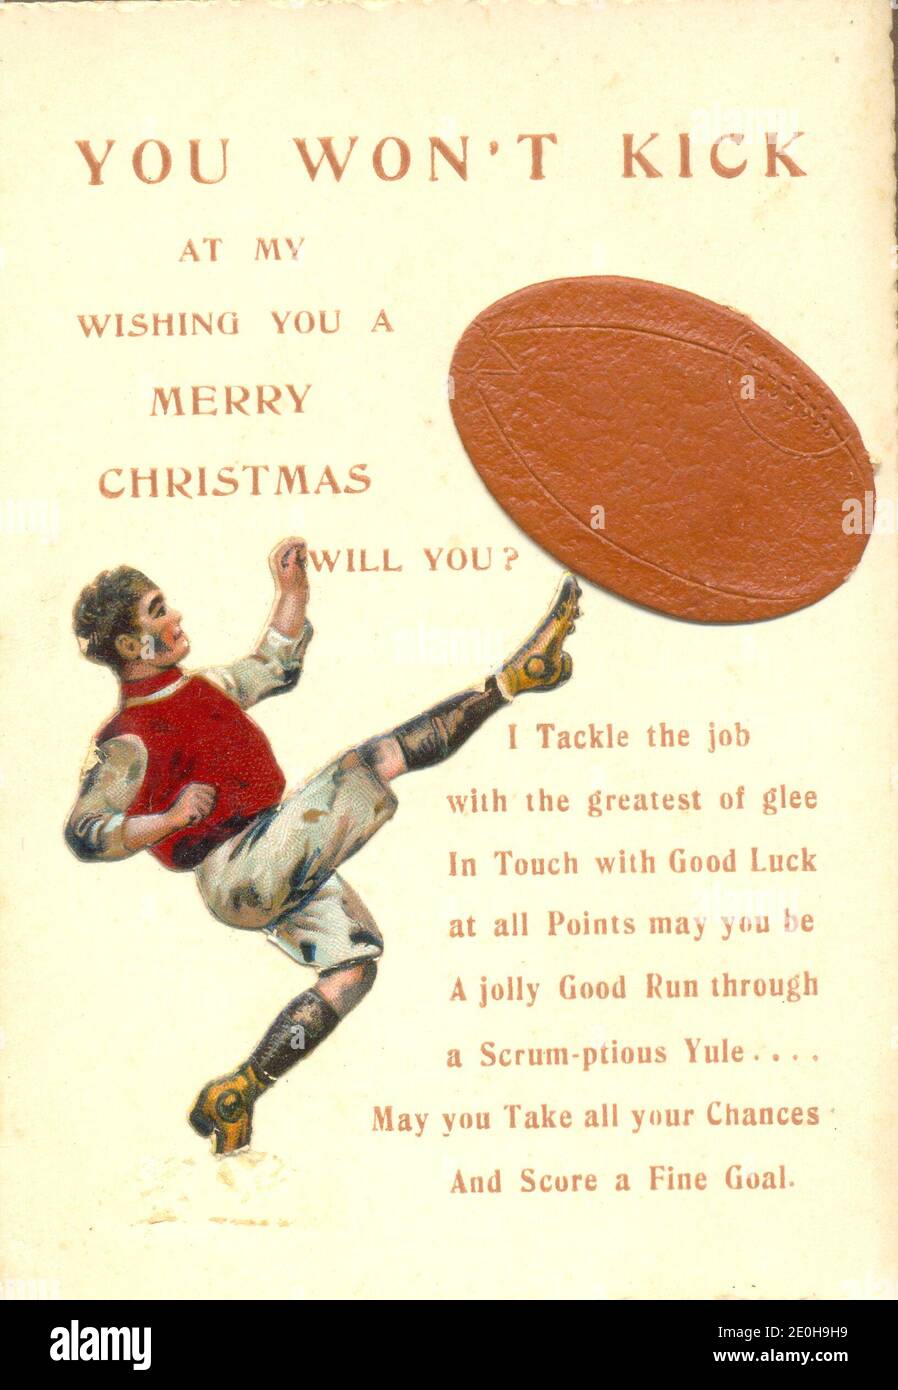 Carte de voeux de Noël avec message punning sur le football publié par Angus Thomas vers 1895 Banque D'Images